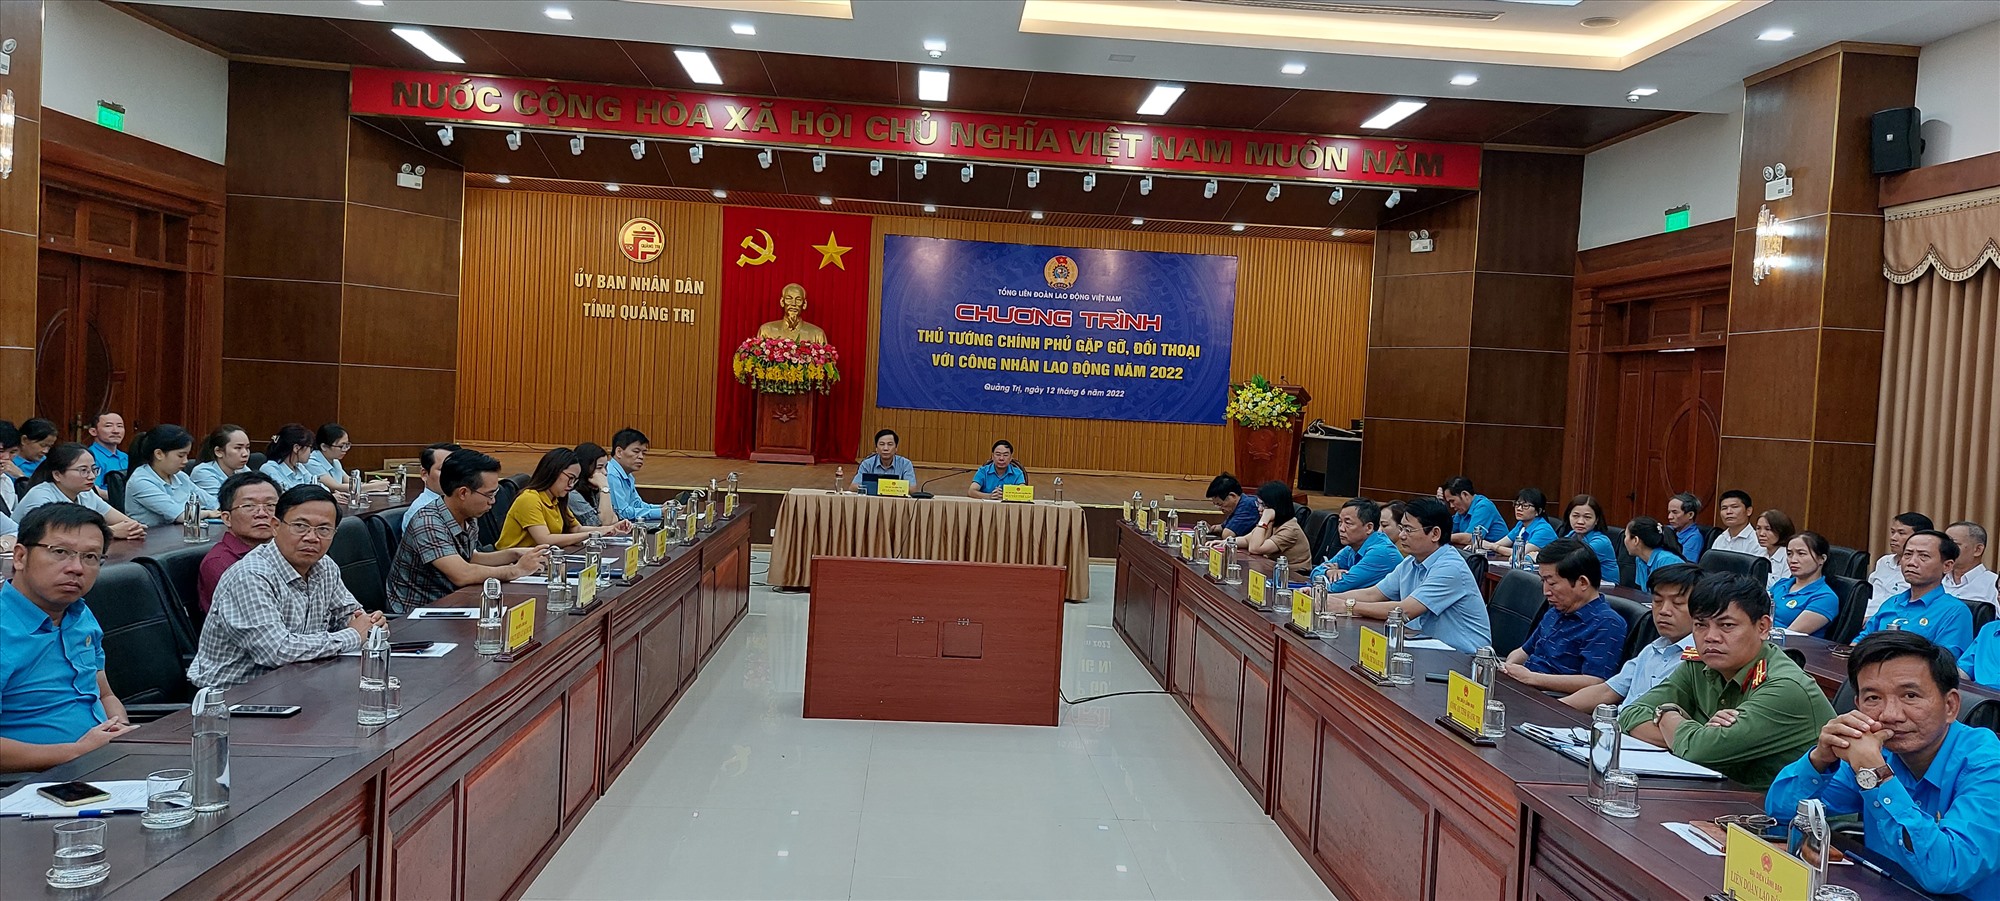 Các đại biểu tham dự chương trình Thủ tướng Chính phủ gặp gỡ, đối thoại với công nhân lao động tại điểm cầu tỉnh Quảng Trị - Ảnh: N.T.H